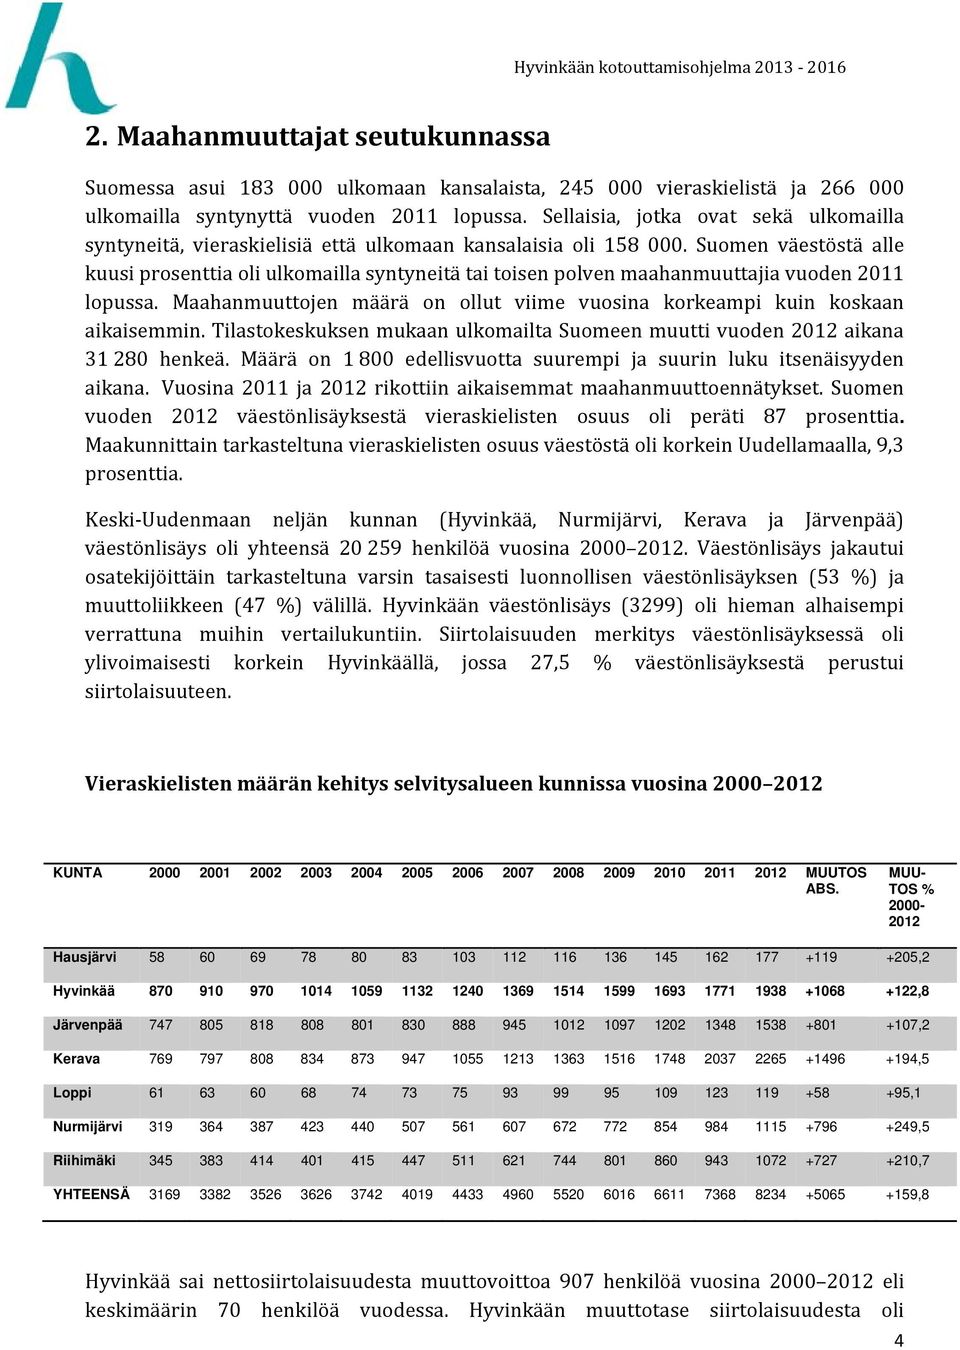 Suomen väestöstä alle kuusi prosenttia oli ulkomailla syntyneitä tai toisen polven maahanmuuttajia vuoden 2011 lopussa. Maahanmuuttojen määrä on ollut viime vuosina korkeampi kuin koskaan aikaisemmin.